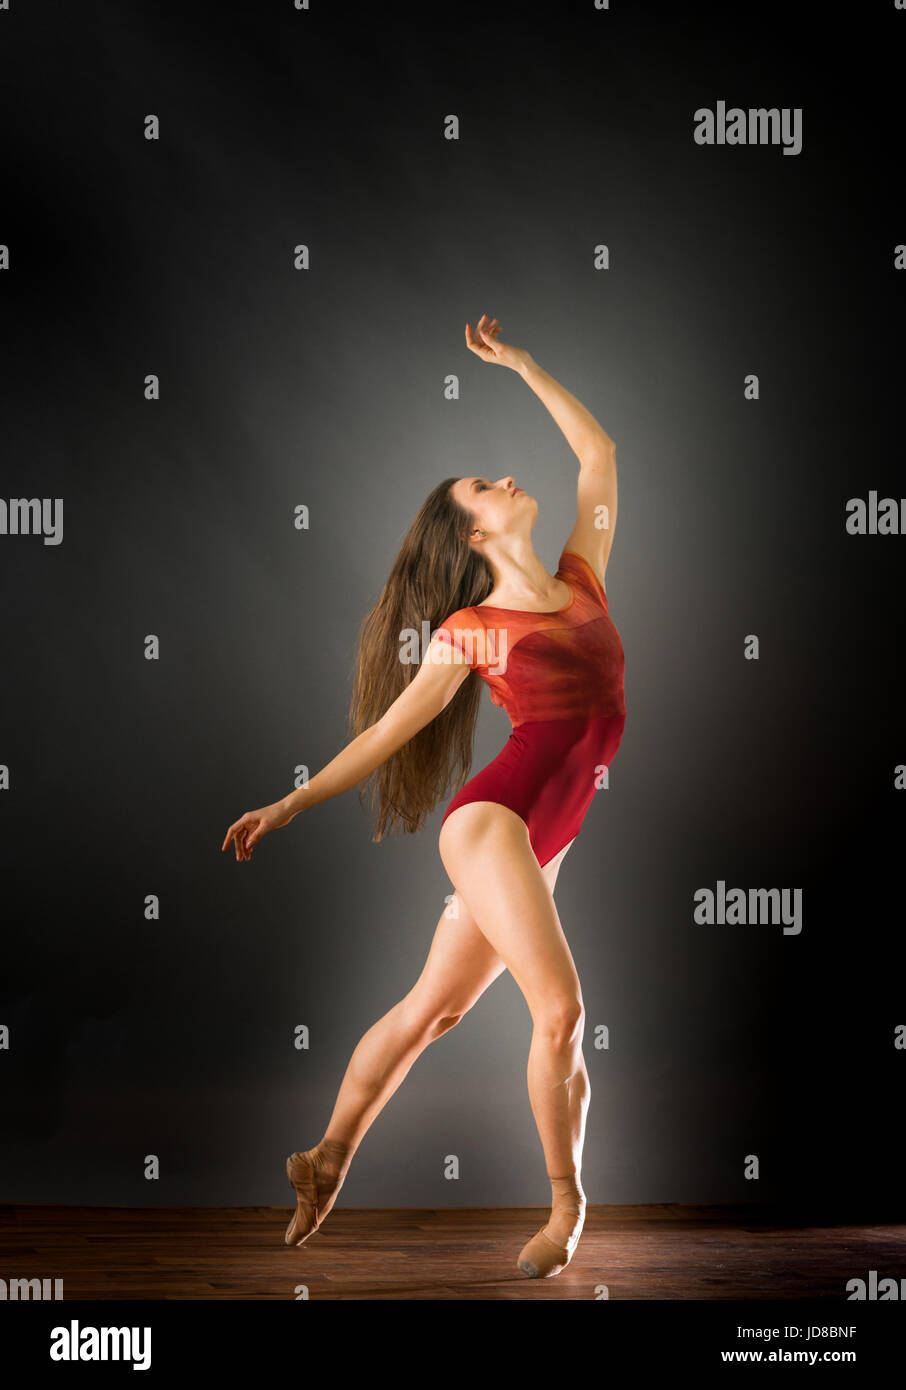 Femme danseuse de ballet s'adossant à la recherche jusqu'à bras tendus, studio shot. caucasian monter assez maigre athletic Banque D'Images